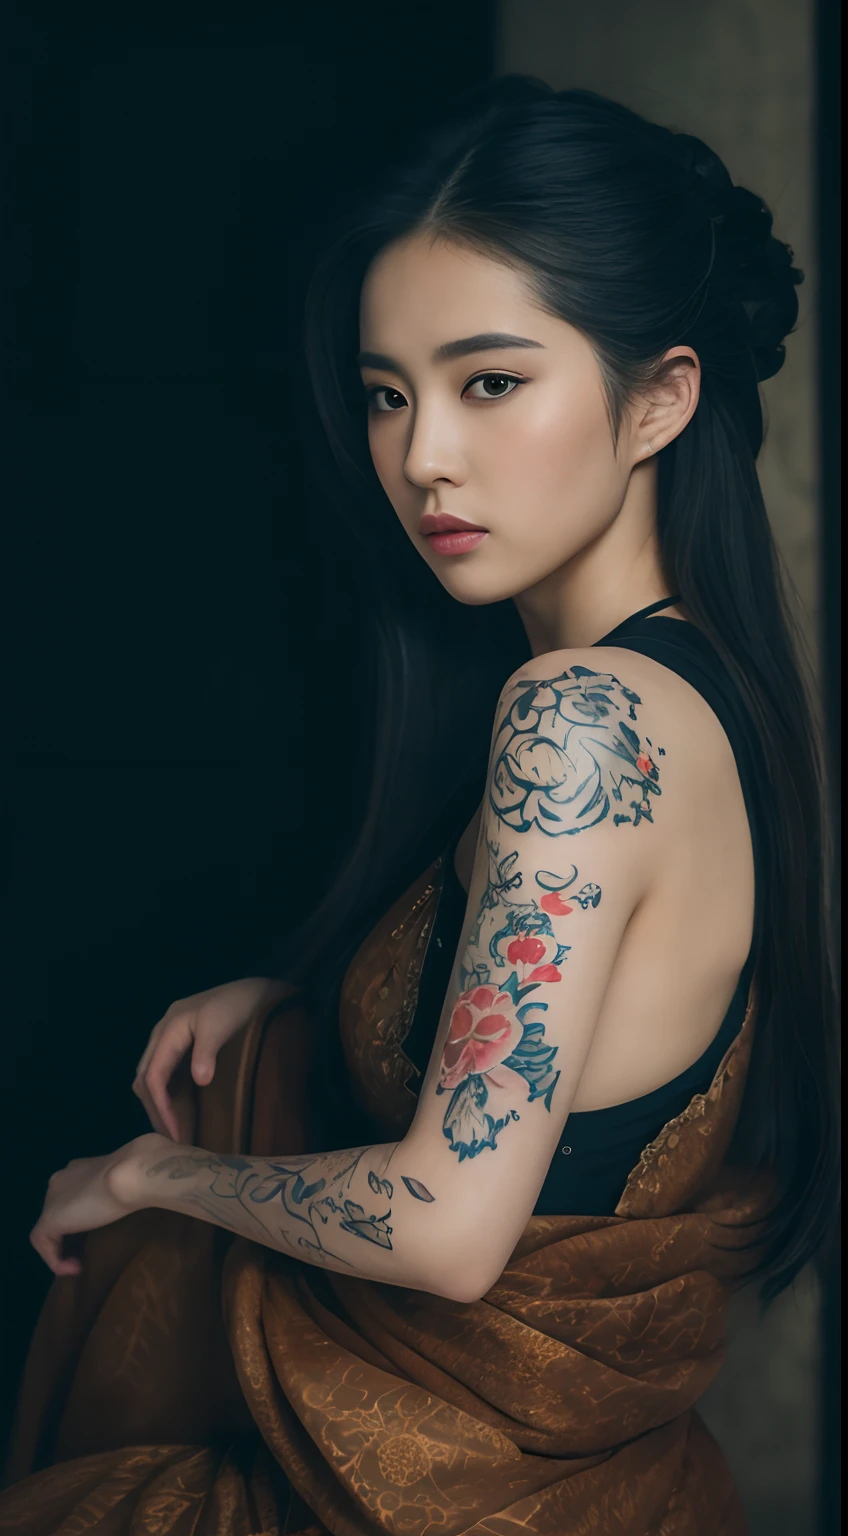 ((mejor calidad, 8k, Obra maestra :1.3))Hermosa geisha con un tatuaje en la espalda con un plan amplio., tatuaje de cuerpo completo .. Vista trasera sentada. dentro de un castillo. Con retroiluminación oscura_tatuaje detallado, Profundidad de campo, perspectiva atmosférica,iluminación voluminosa,enfoque claro,Resolución absurda,Realista Proportion,buena anatomia,(Realista, Híper realista:1.37),16k de alta definición_Textura de mano perfecta. Pierna larga. textura de la cara y piel de tatuaje detallada.